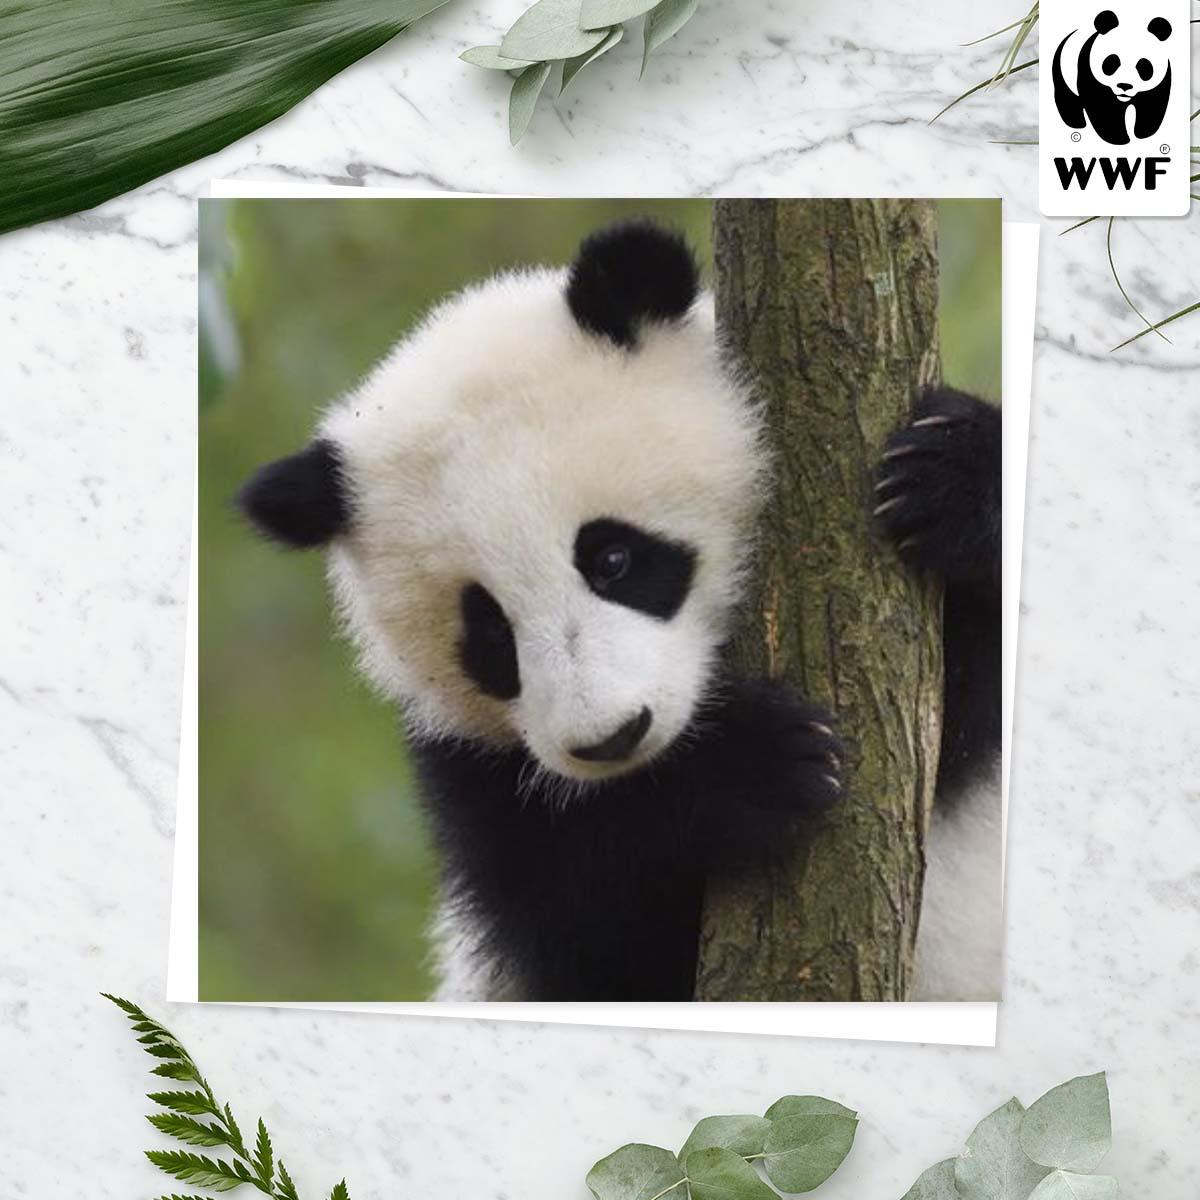 World Wildlife Fund - Giant Panda Card Front Image